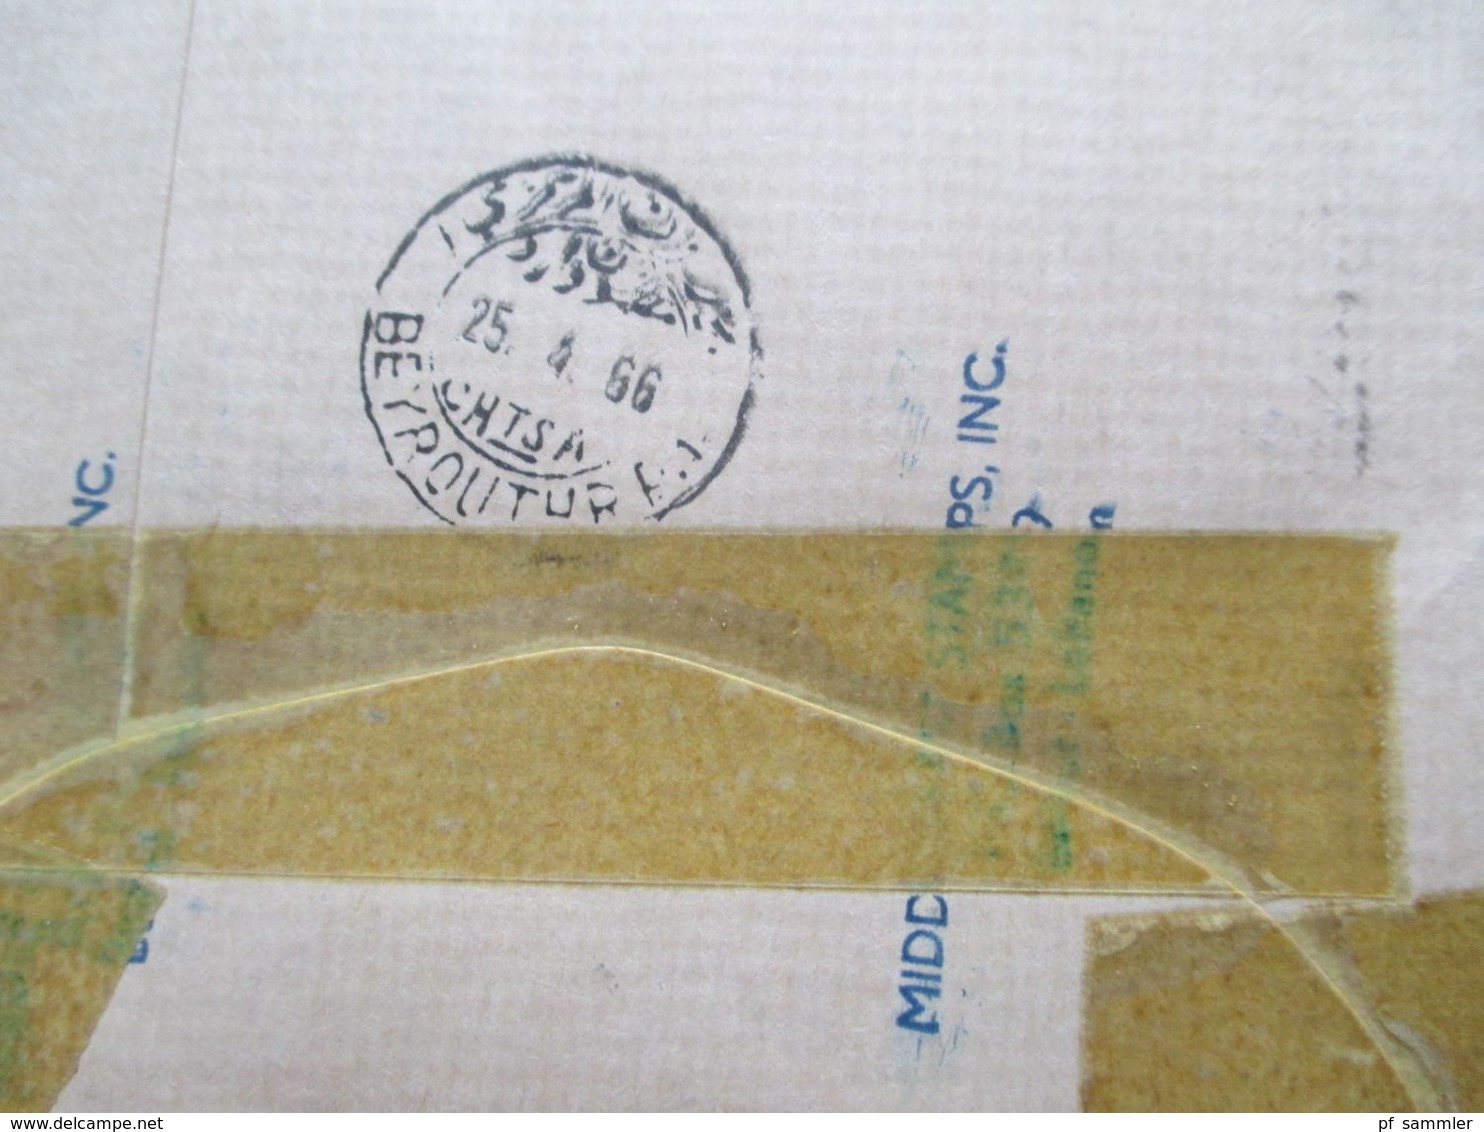 Libanon 1966 Einschreiben Air Mail / Luftpost Roter Stempel L2 Nicht Gestellungspflichtig! Liban - Líbano